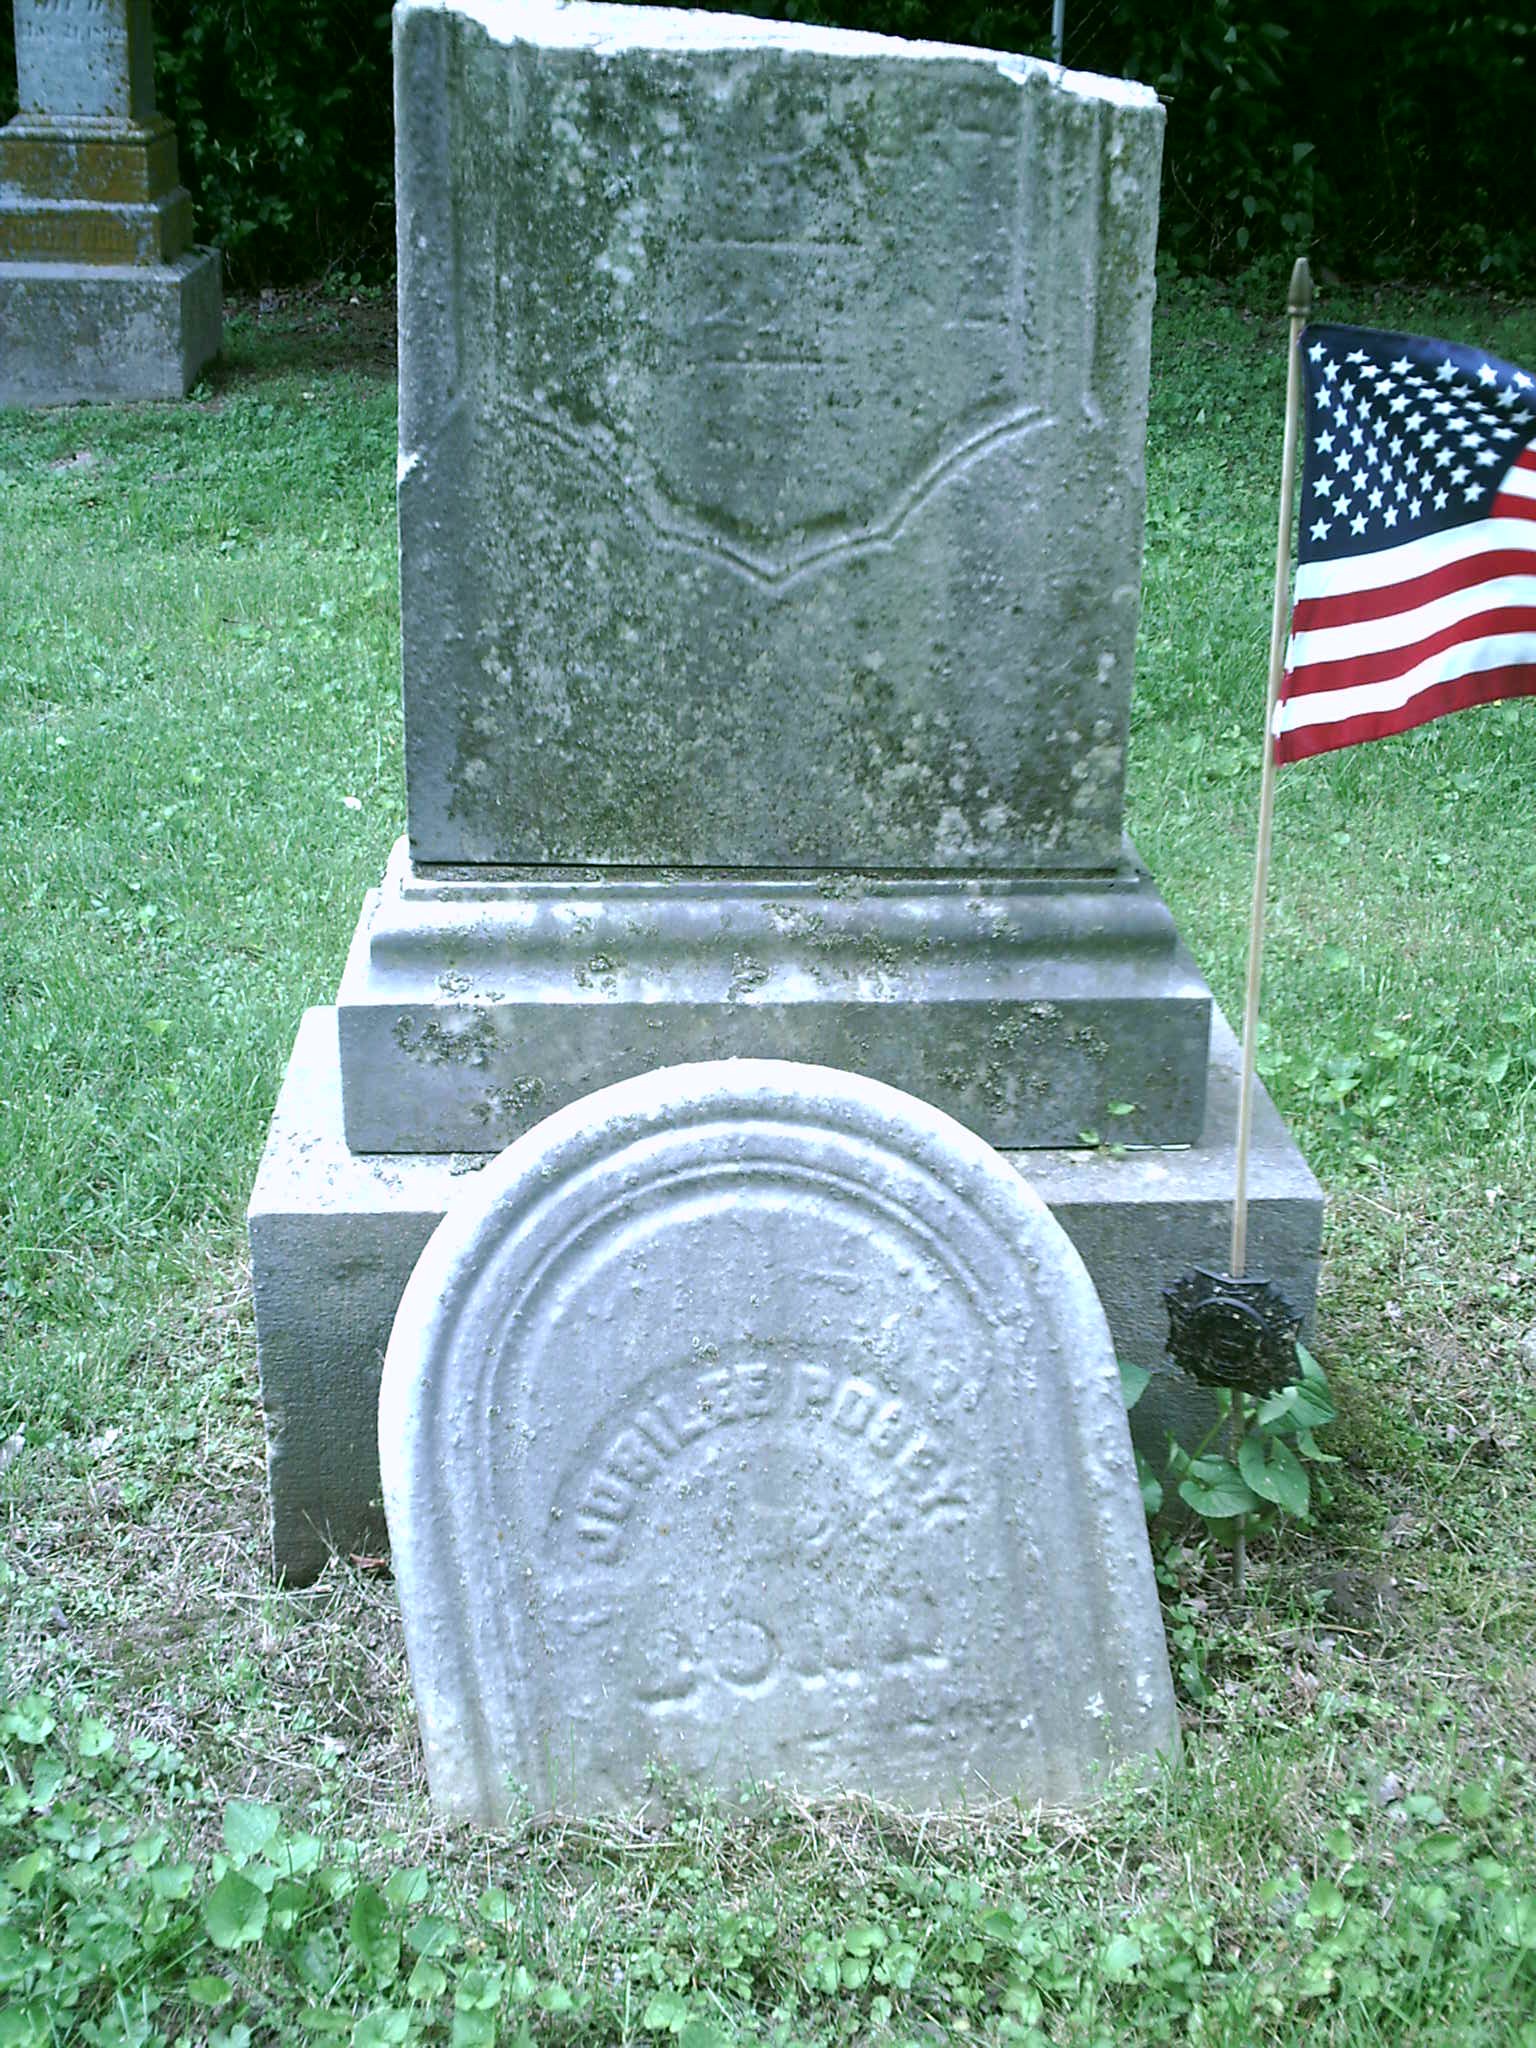 Jubilee Posey Headstone